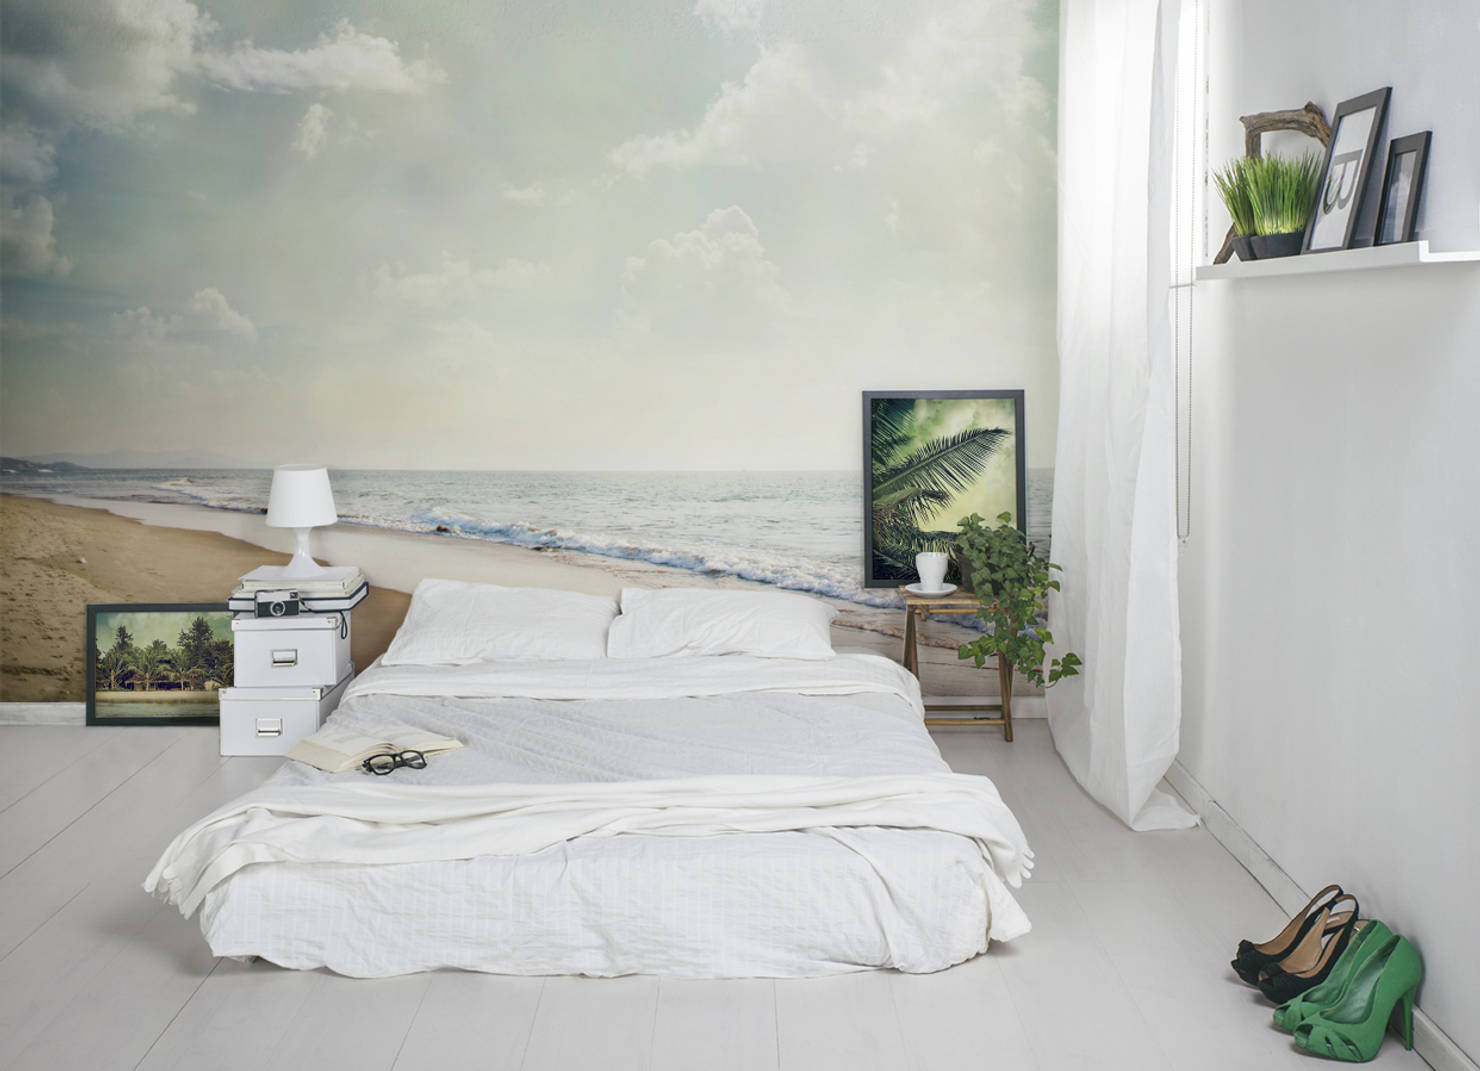 6 самых модных идей для акцентной стены в спальне- фотографии
				